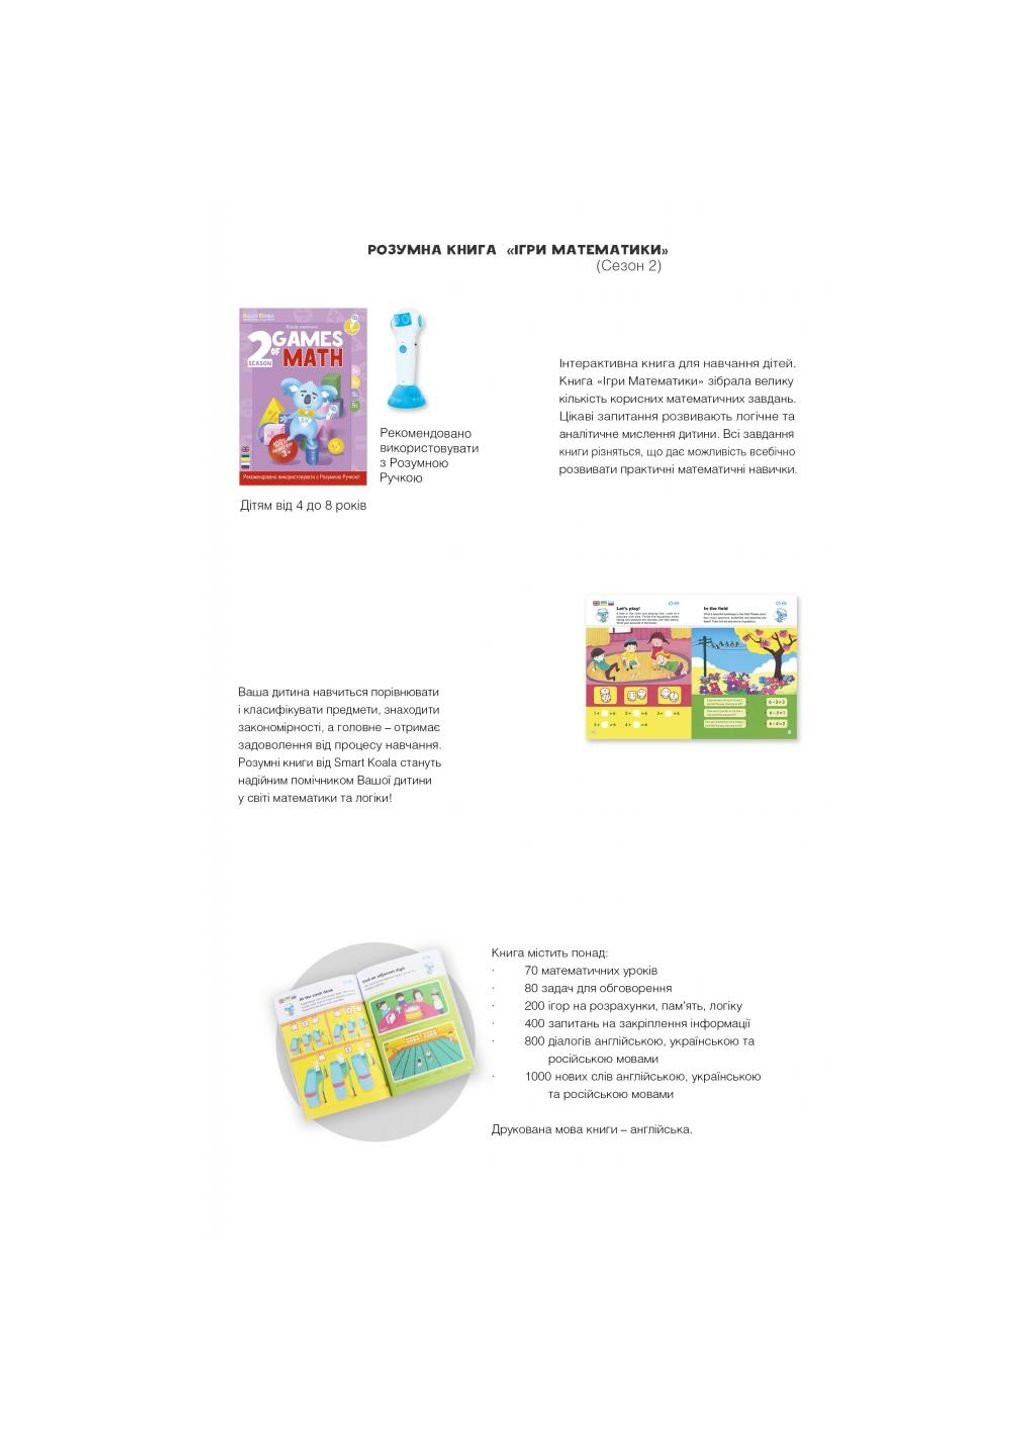 Інтерактивна іграшка розвиваюча книга The Games of Math (Season 2) №2 (SKBGMS2) Smart Koala (254075995)